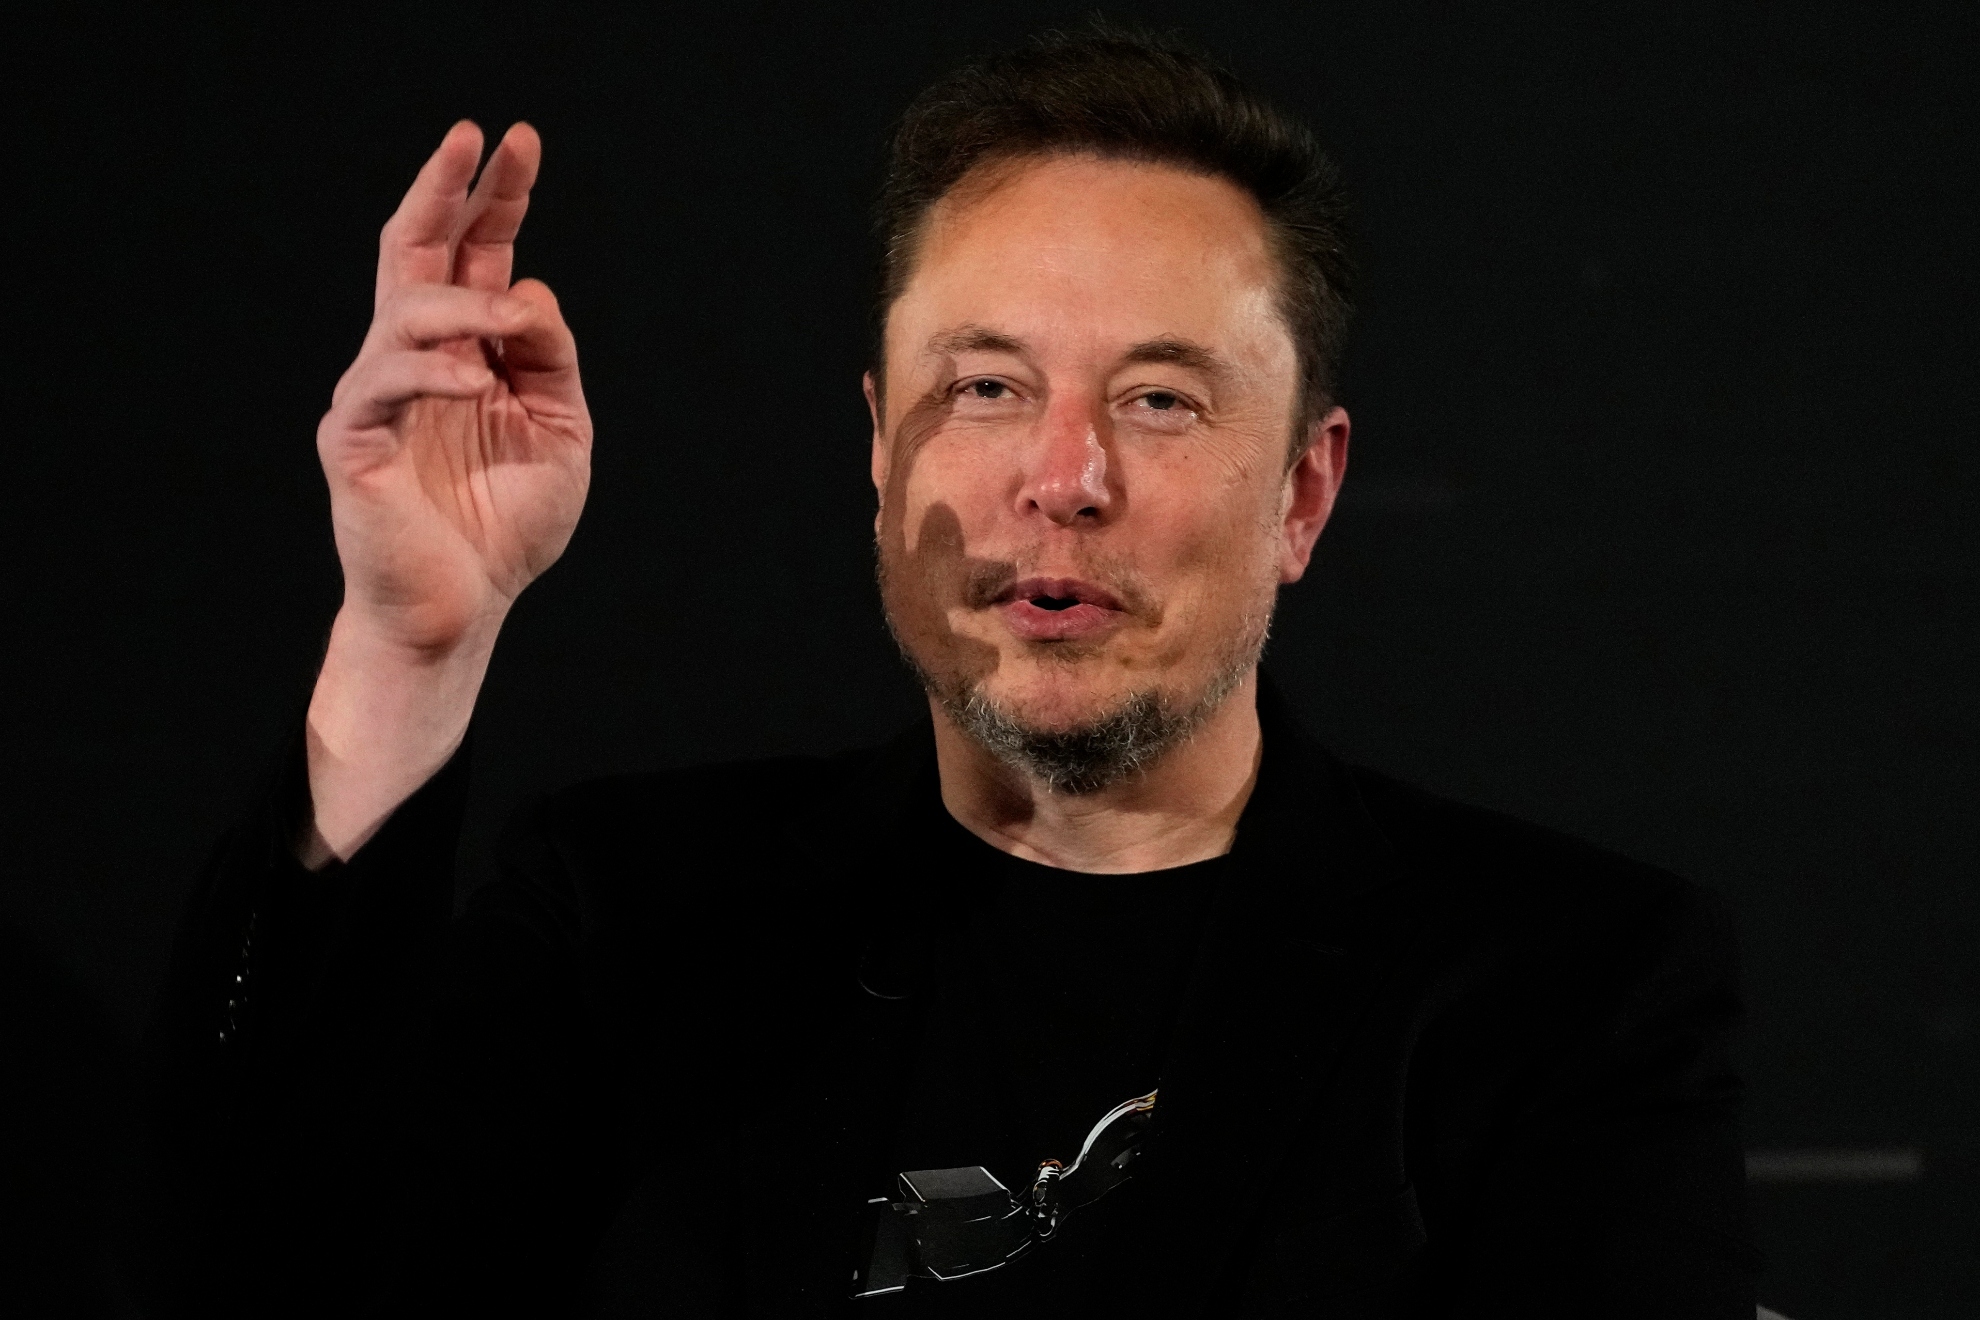 Elon Musk during an interview